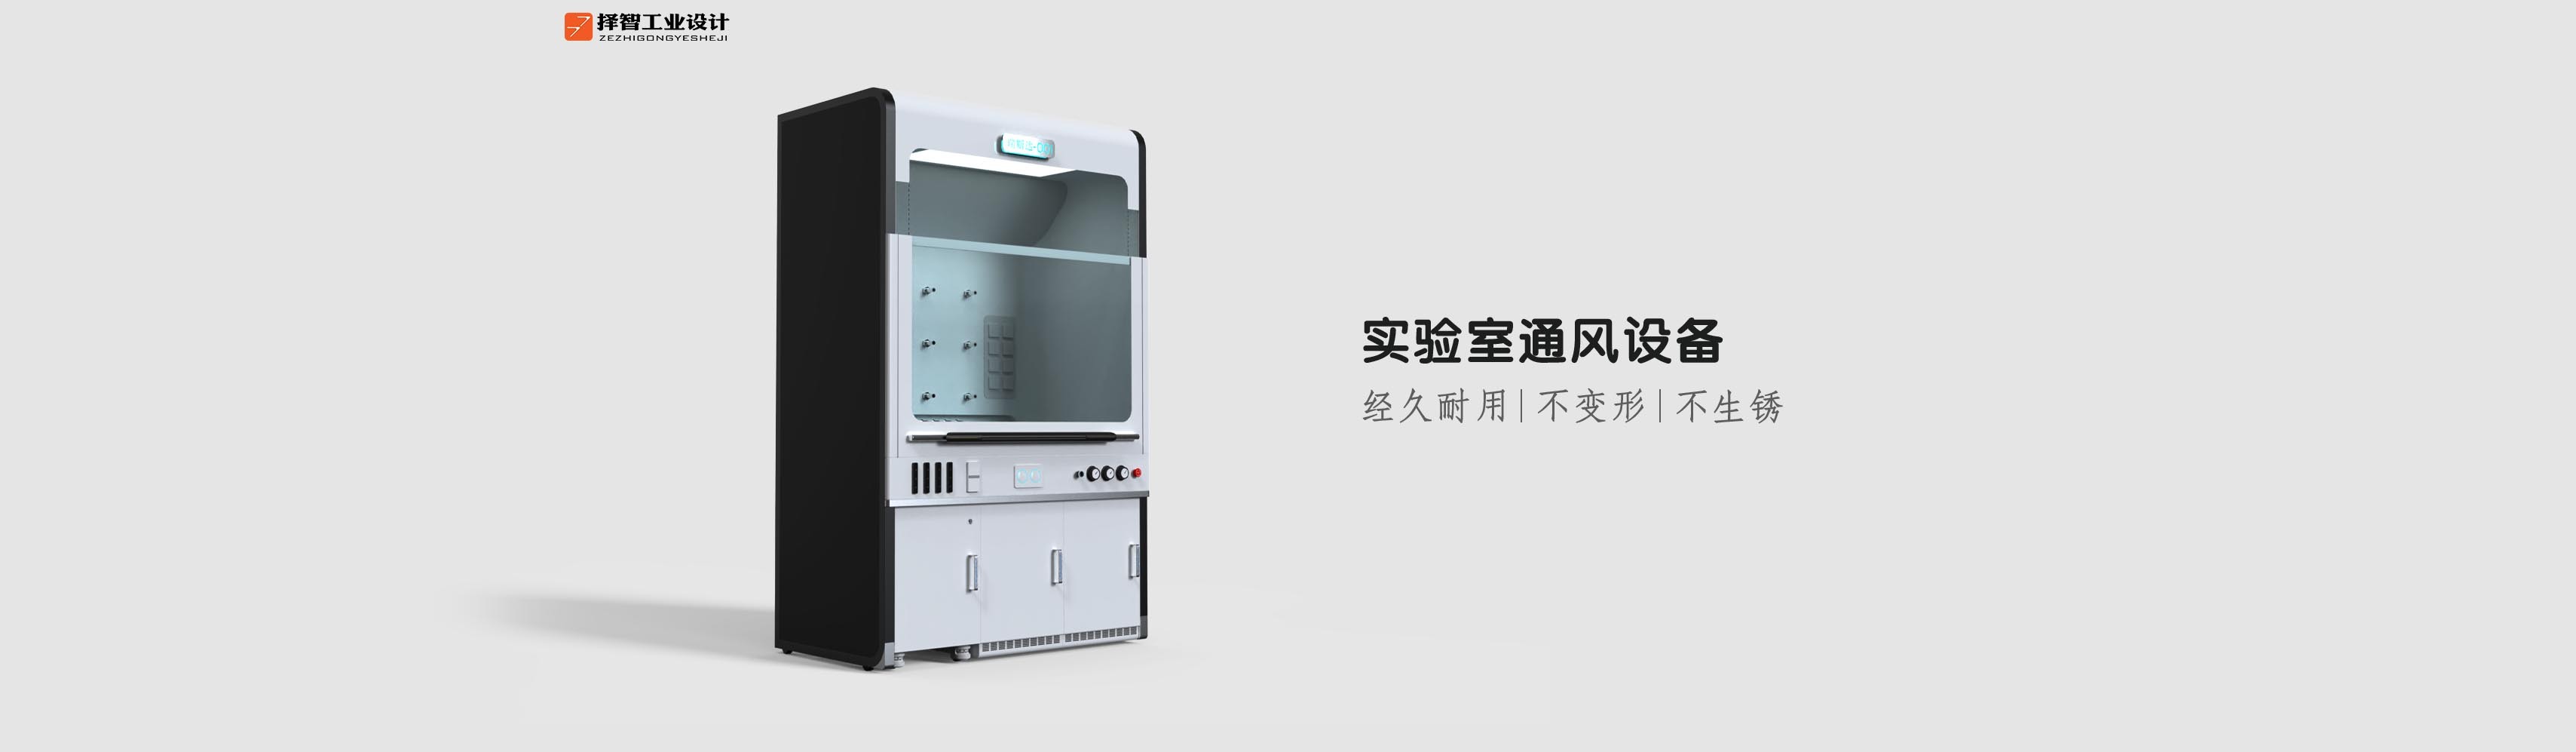 上海苏州产品设计工业产品外观设计结构设计实验室通风设备外观设计